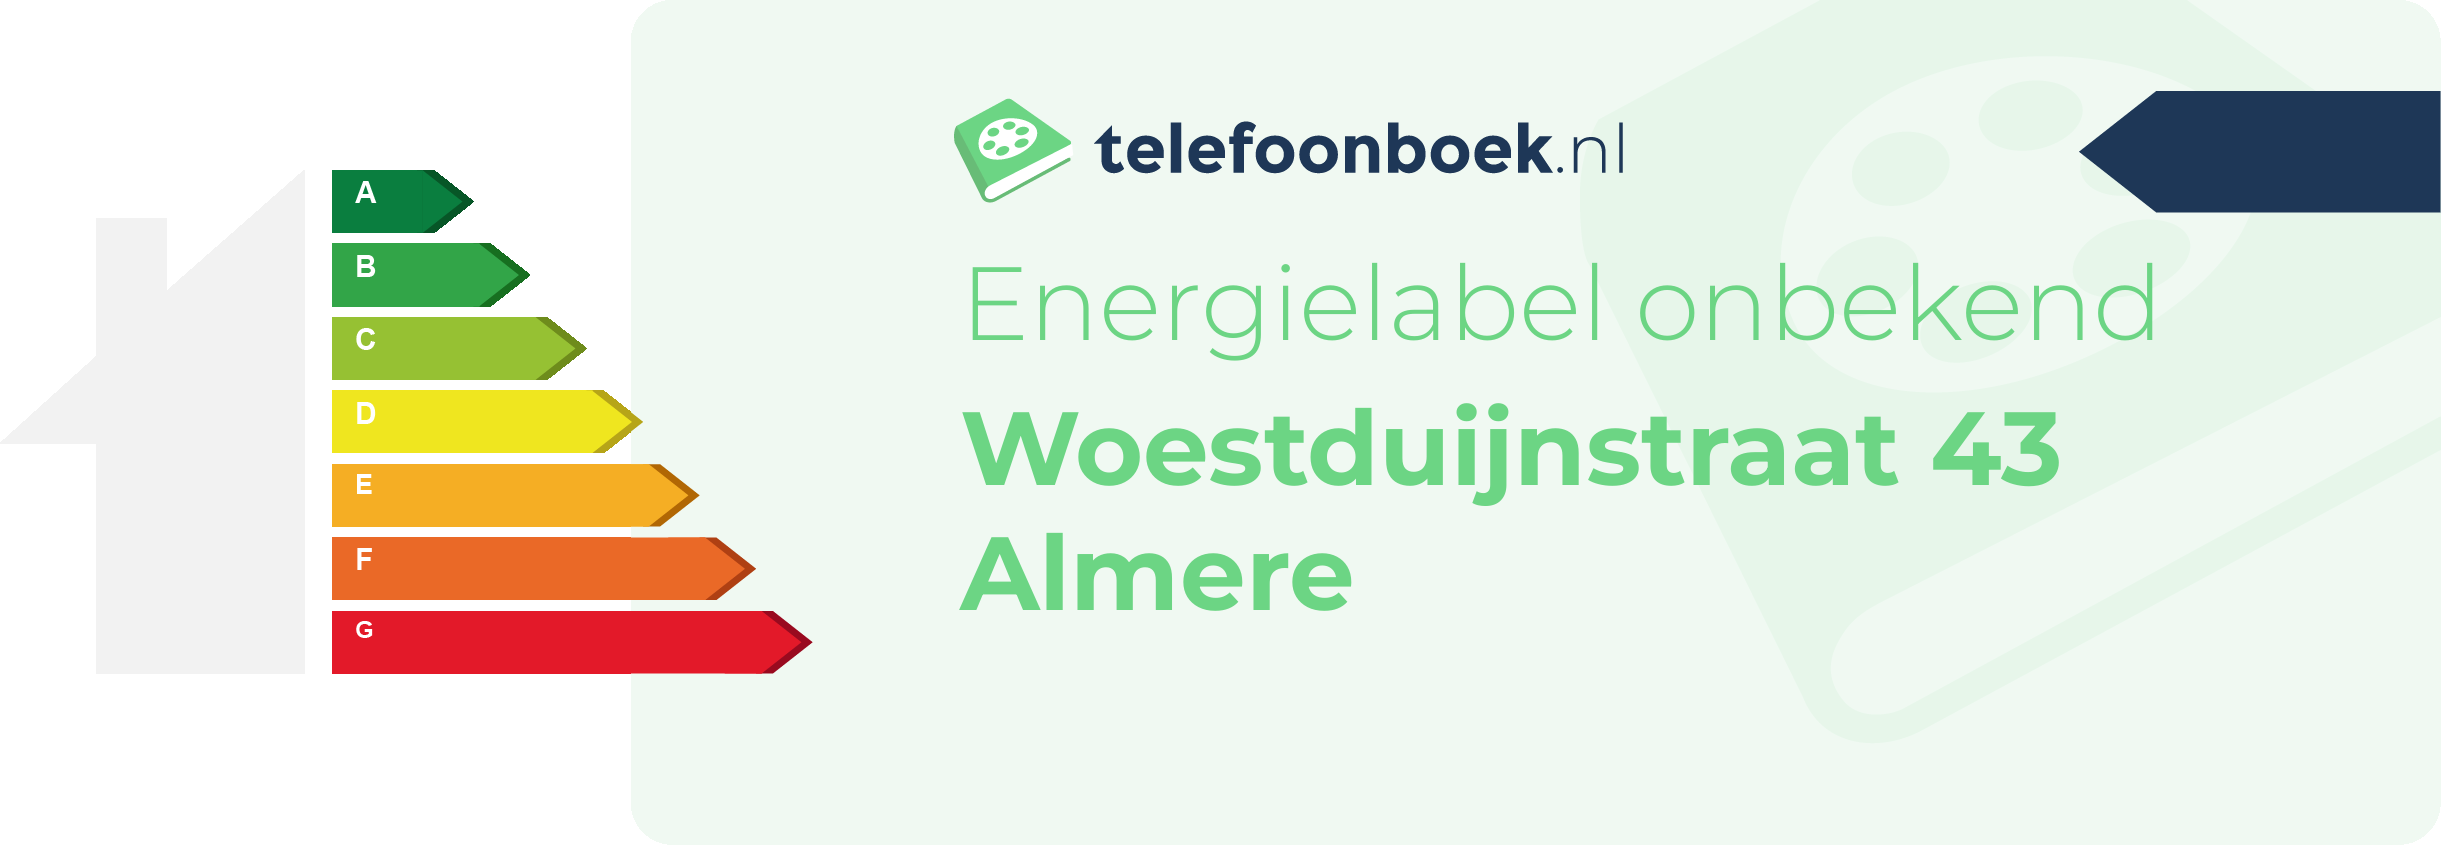 Energielabel Woestduijnstraat 43 Almere